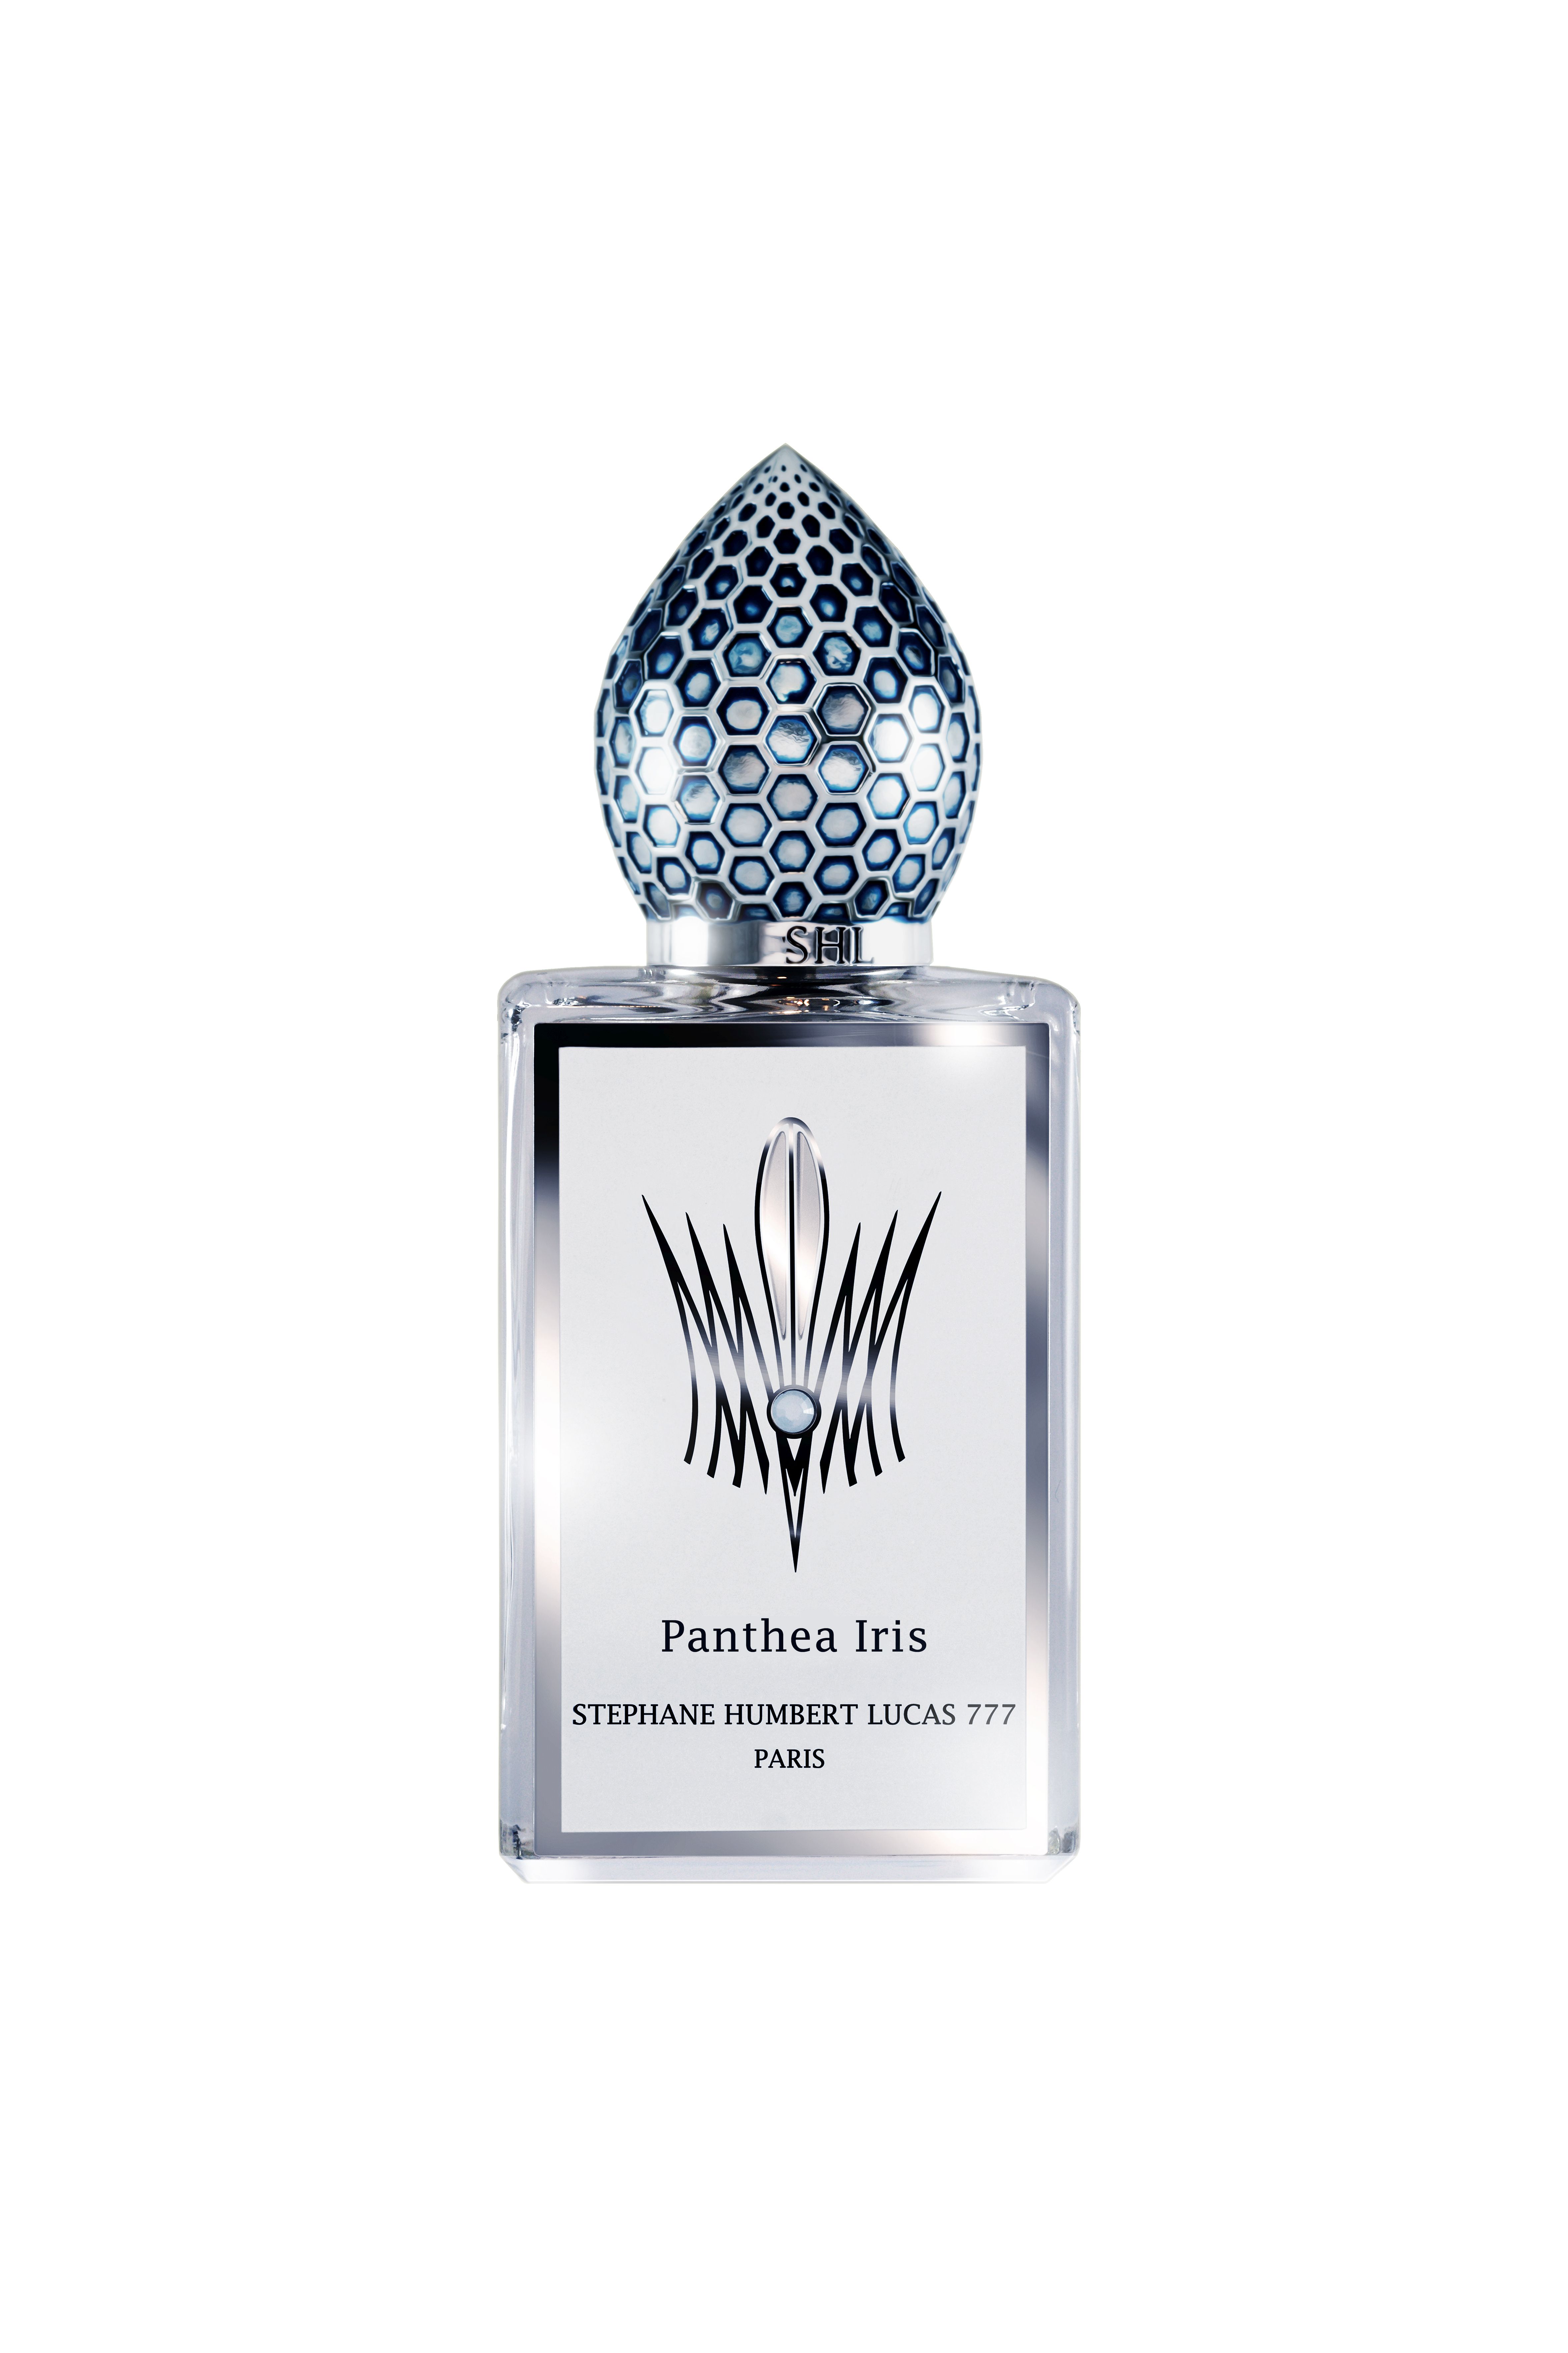 Stéphane Humbert Lucas 777 – Panthea Iris – Eau de Parfum 50 ml